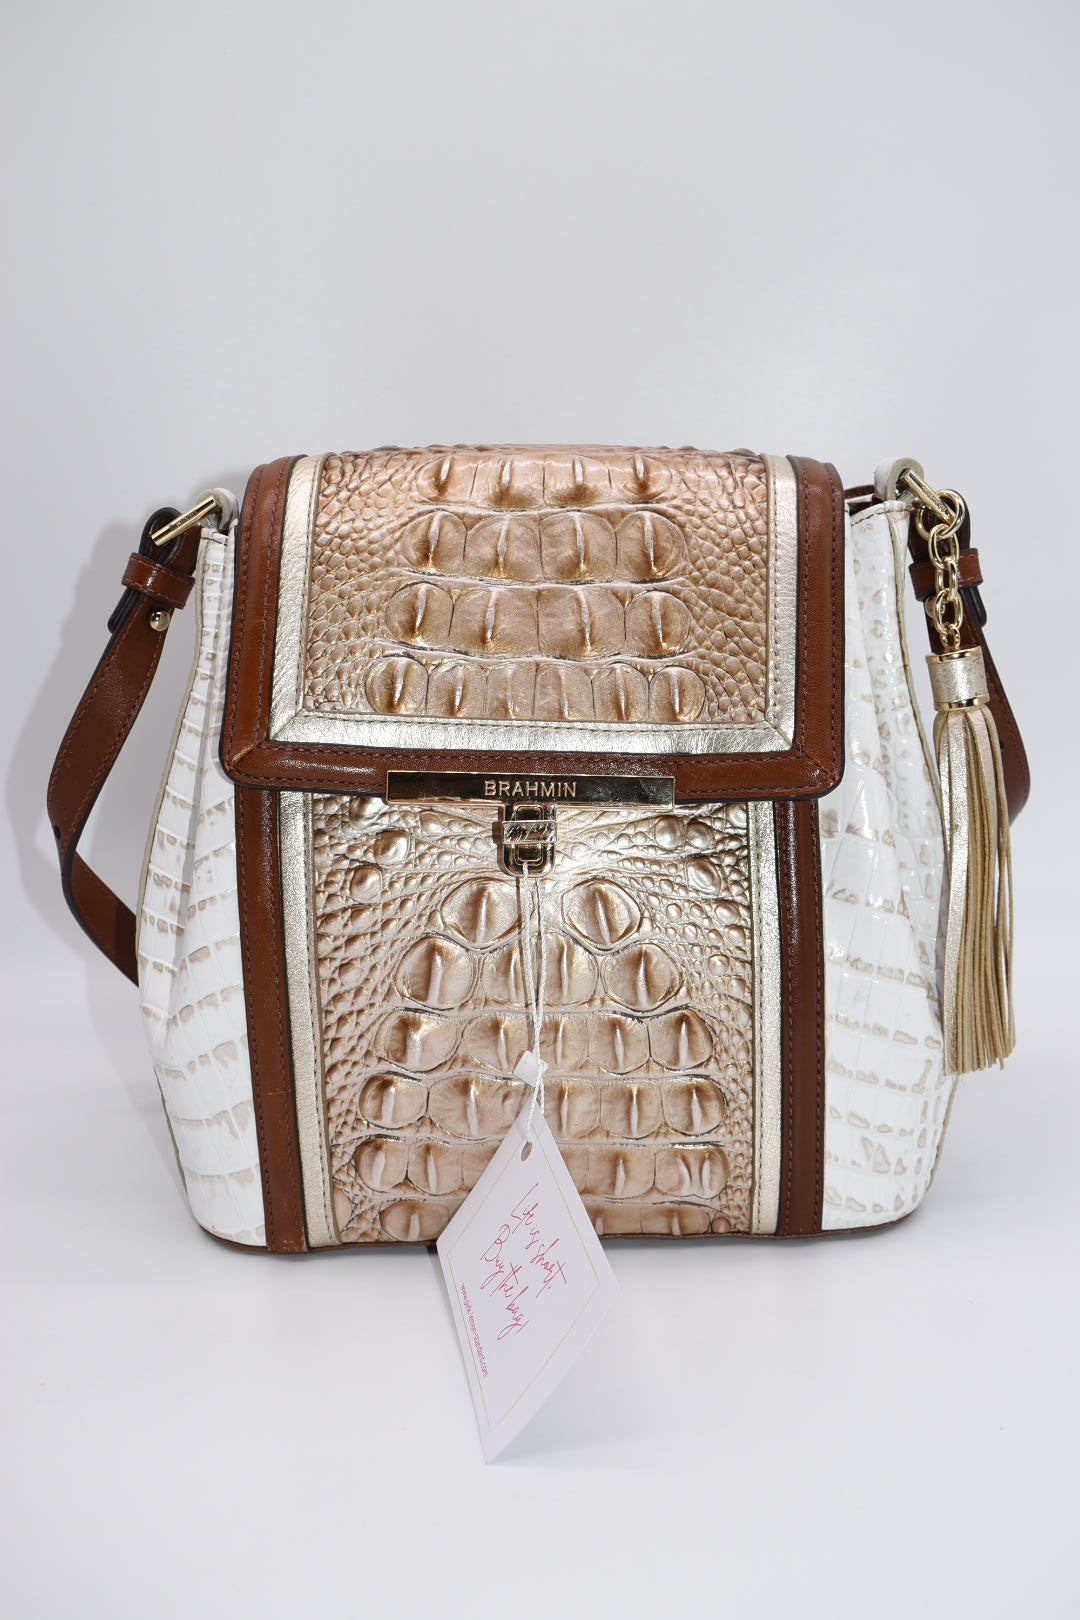 Brahmin crossbody purse - Women's handbags